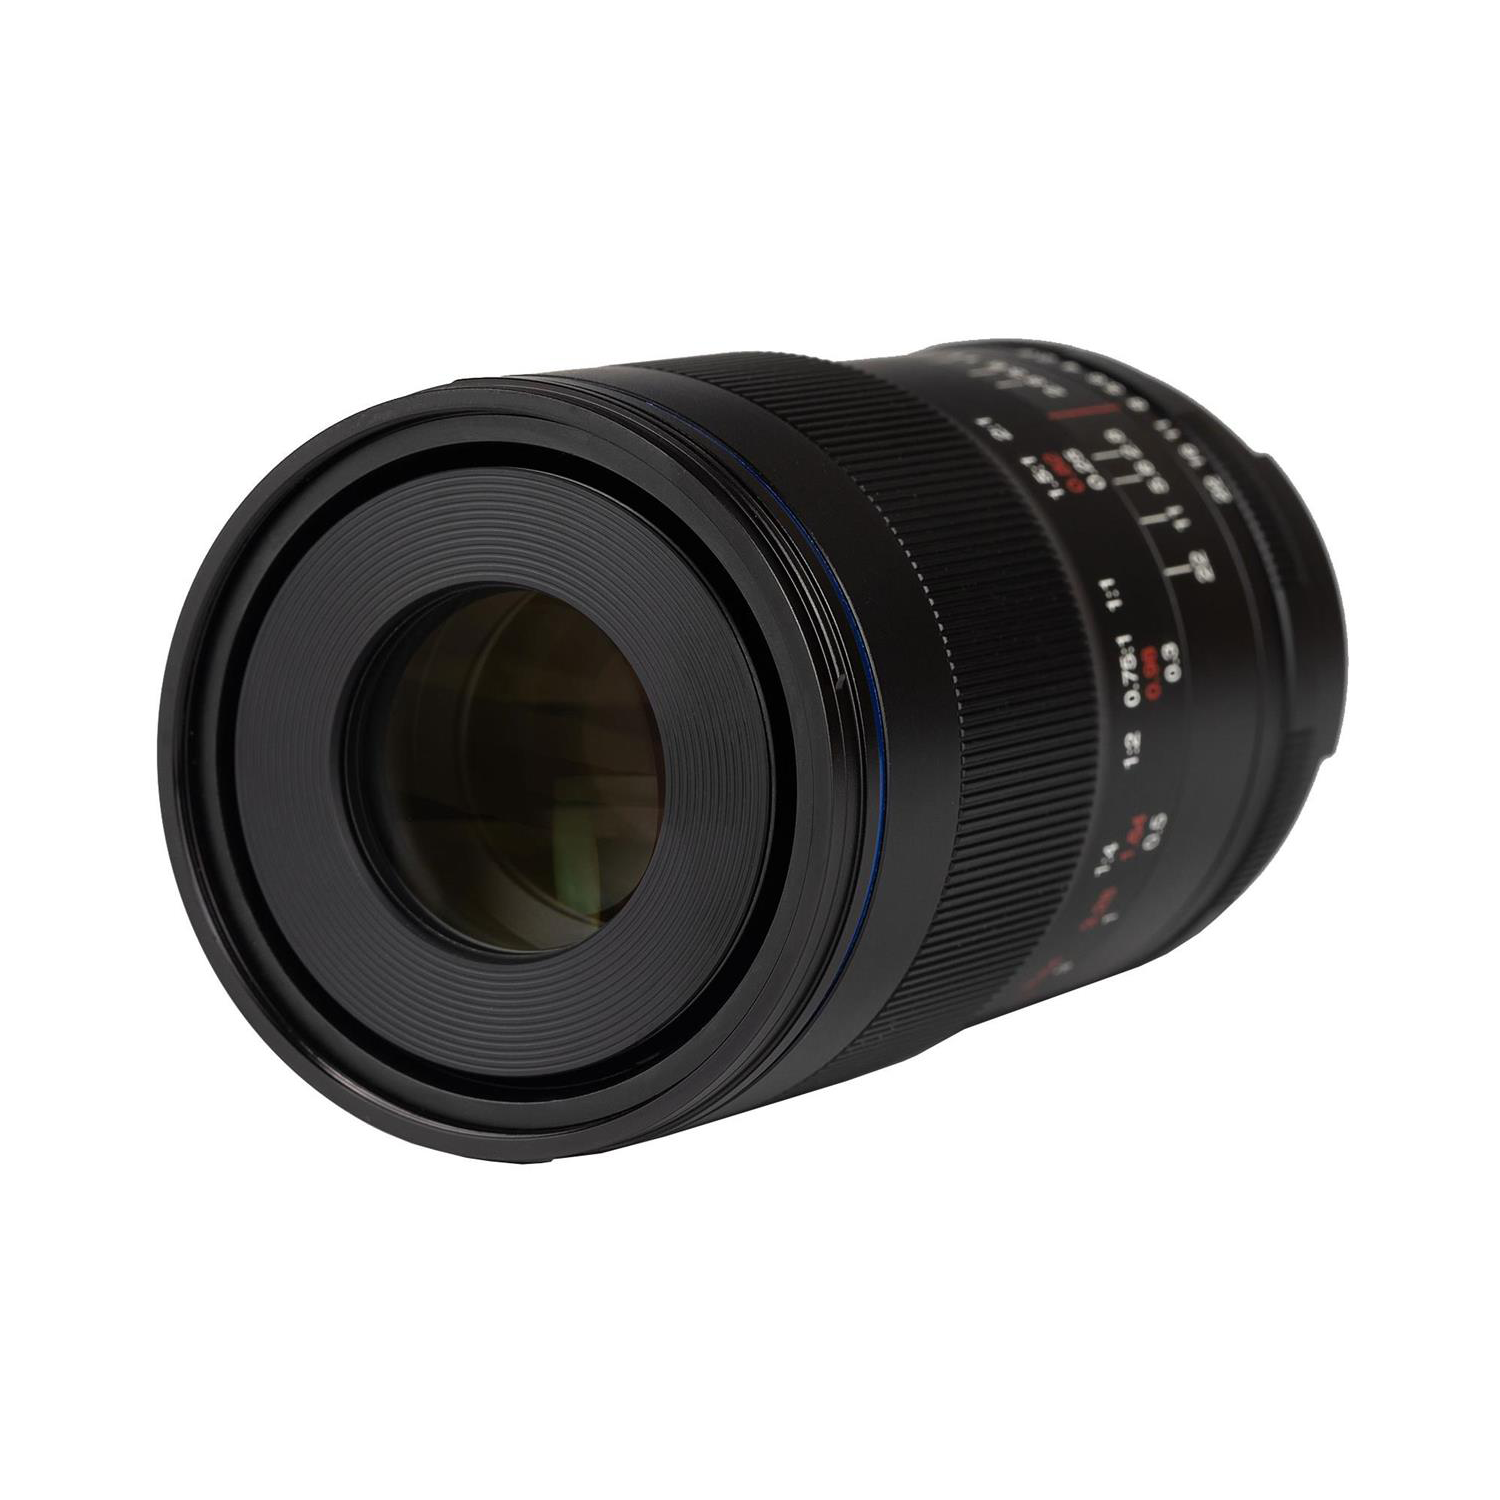 Vénus Laowa 100 mm f / 2,8 2x lentille ultra macro apo pour Sony Fe